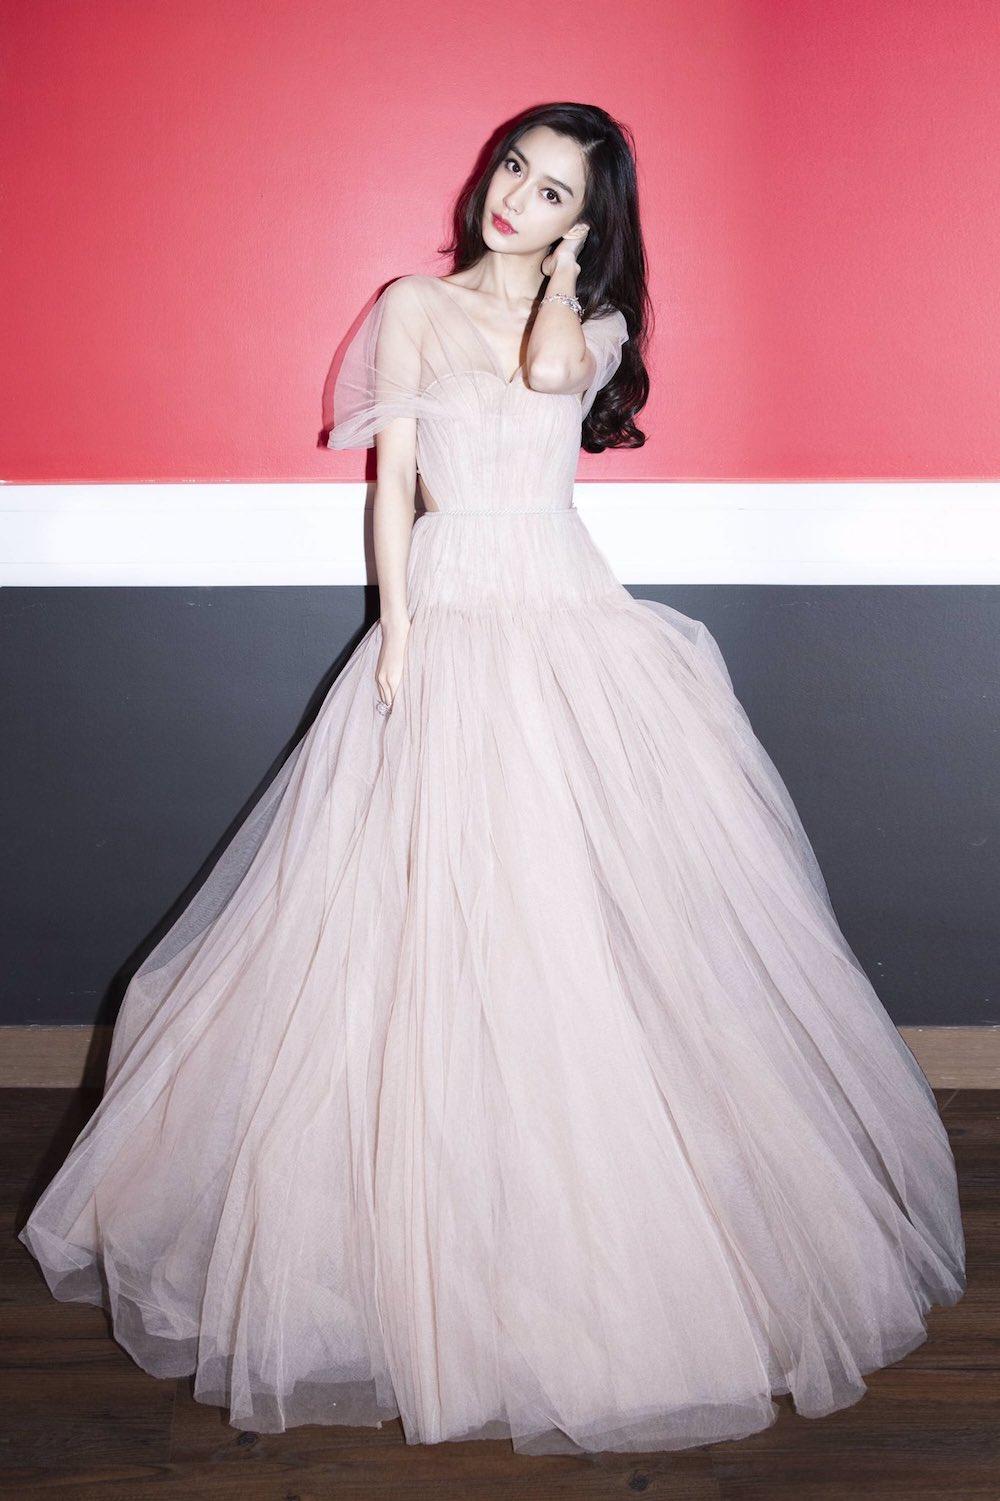 Hoá thân thành nàng công chúa tại MAMA 2018 trong bộ Haute Couture của Dior (Nguồn: Internet)